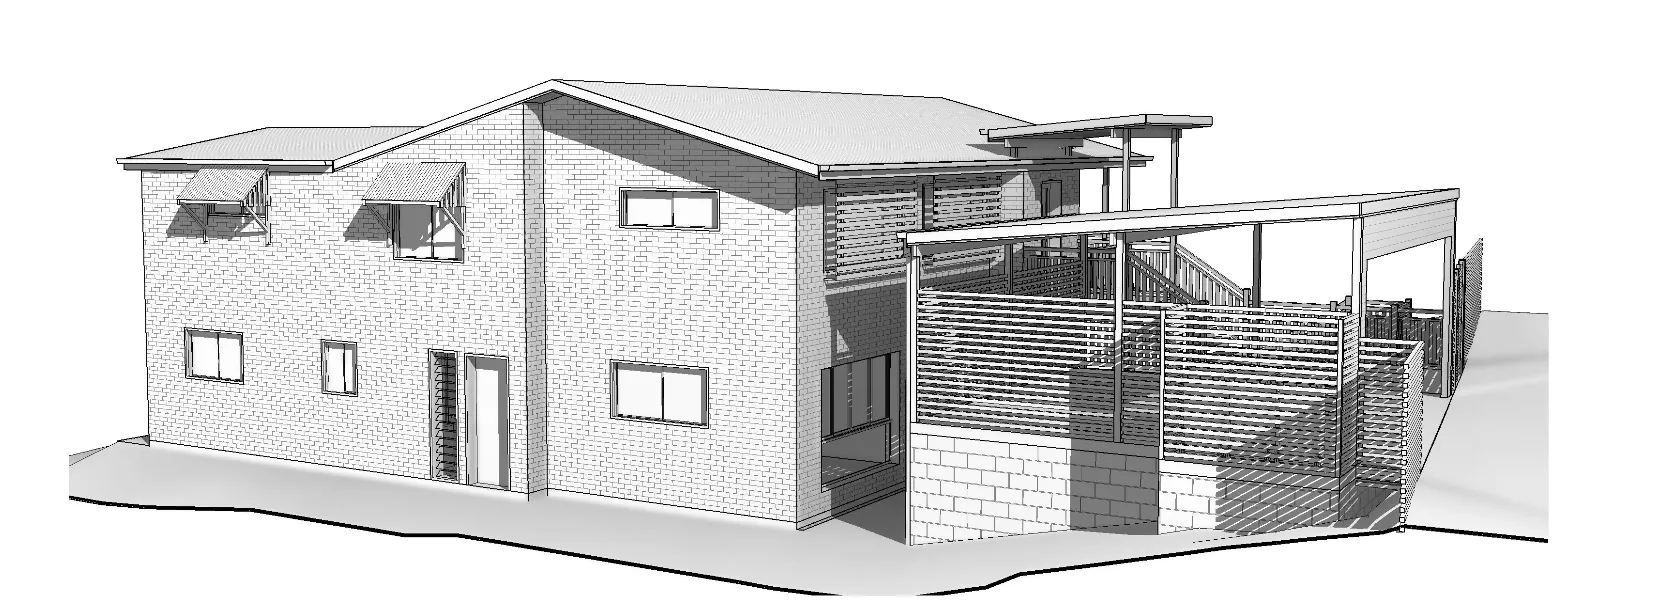 Plans 3D render side of house Arana Hills